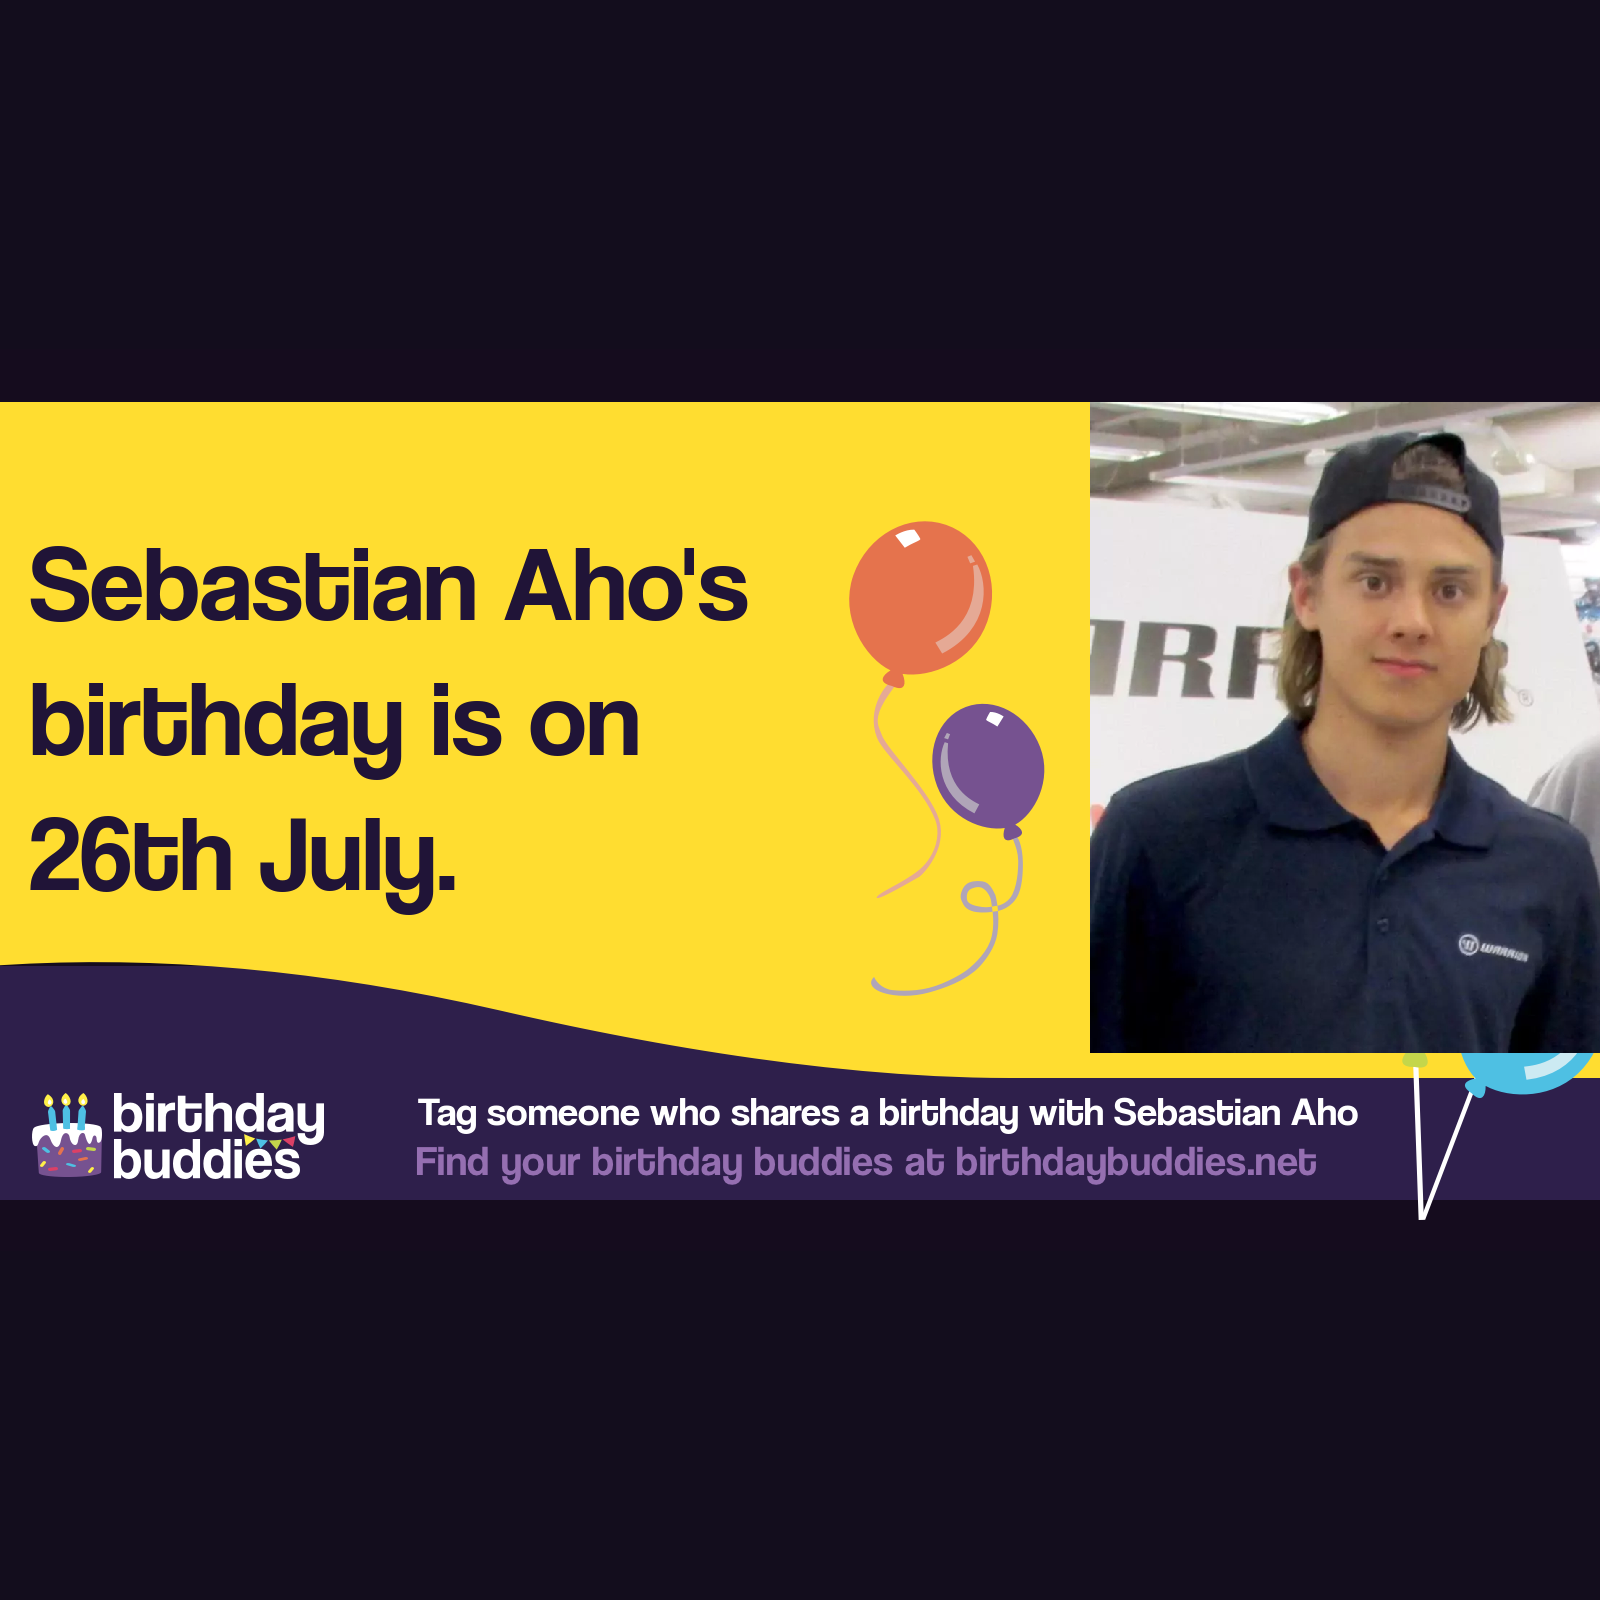 Sebastian Aho's birthday is 26th July 1997